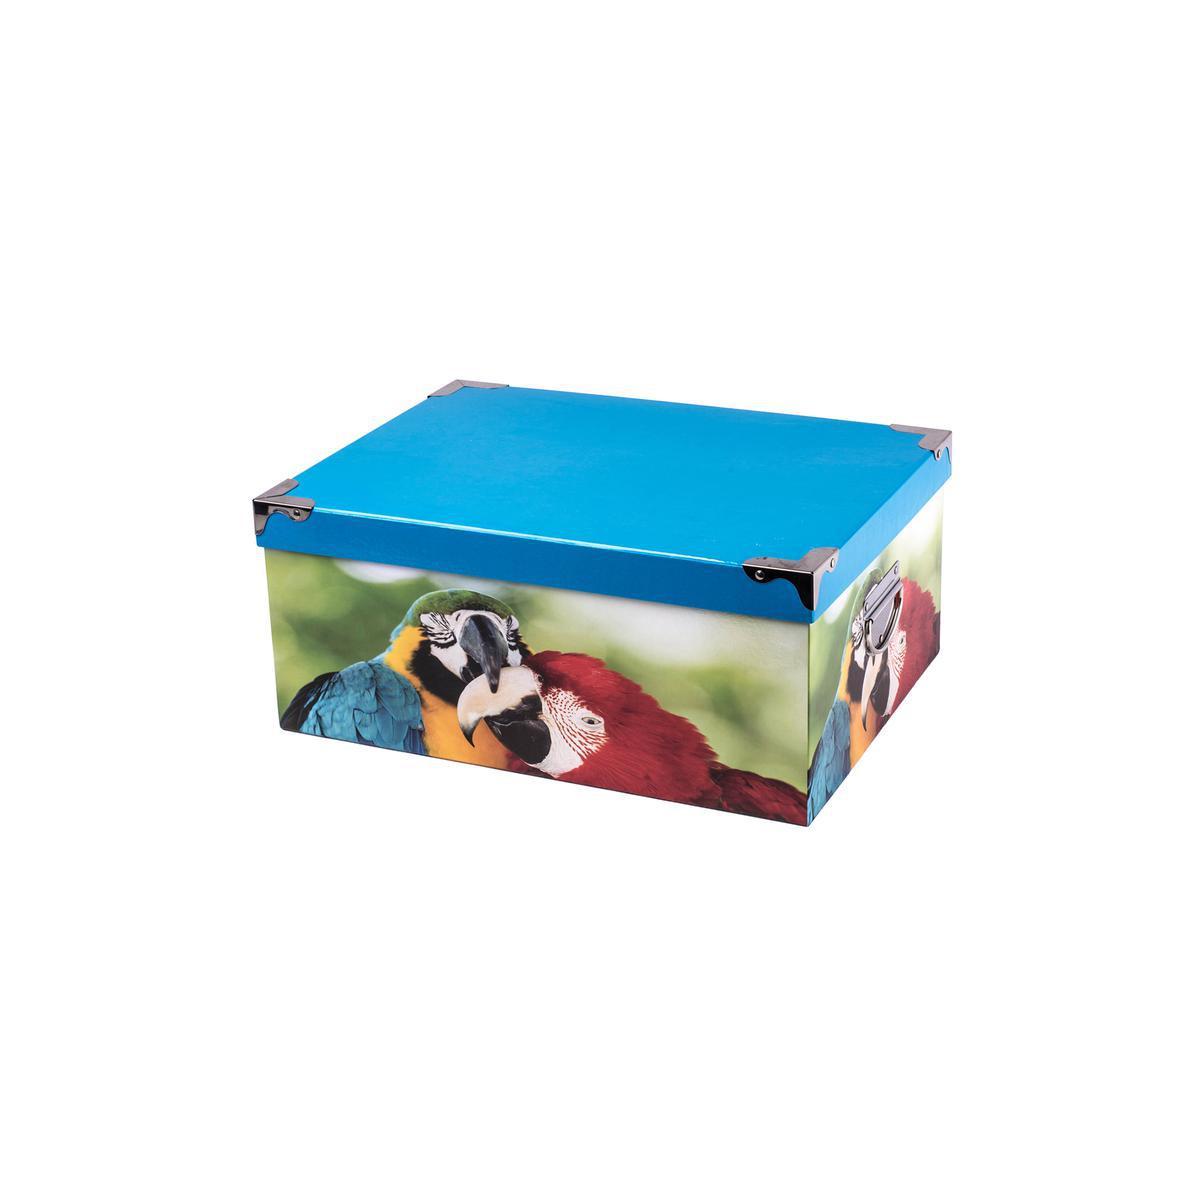 Boîte de rangement - Carton et métal - 26,5 x 19 x H 11,5 cm - Multicolore